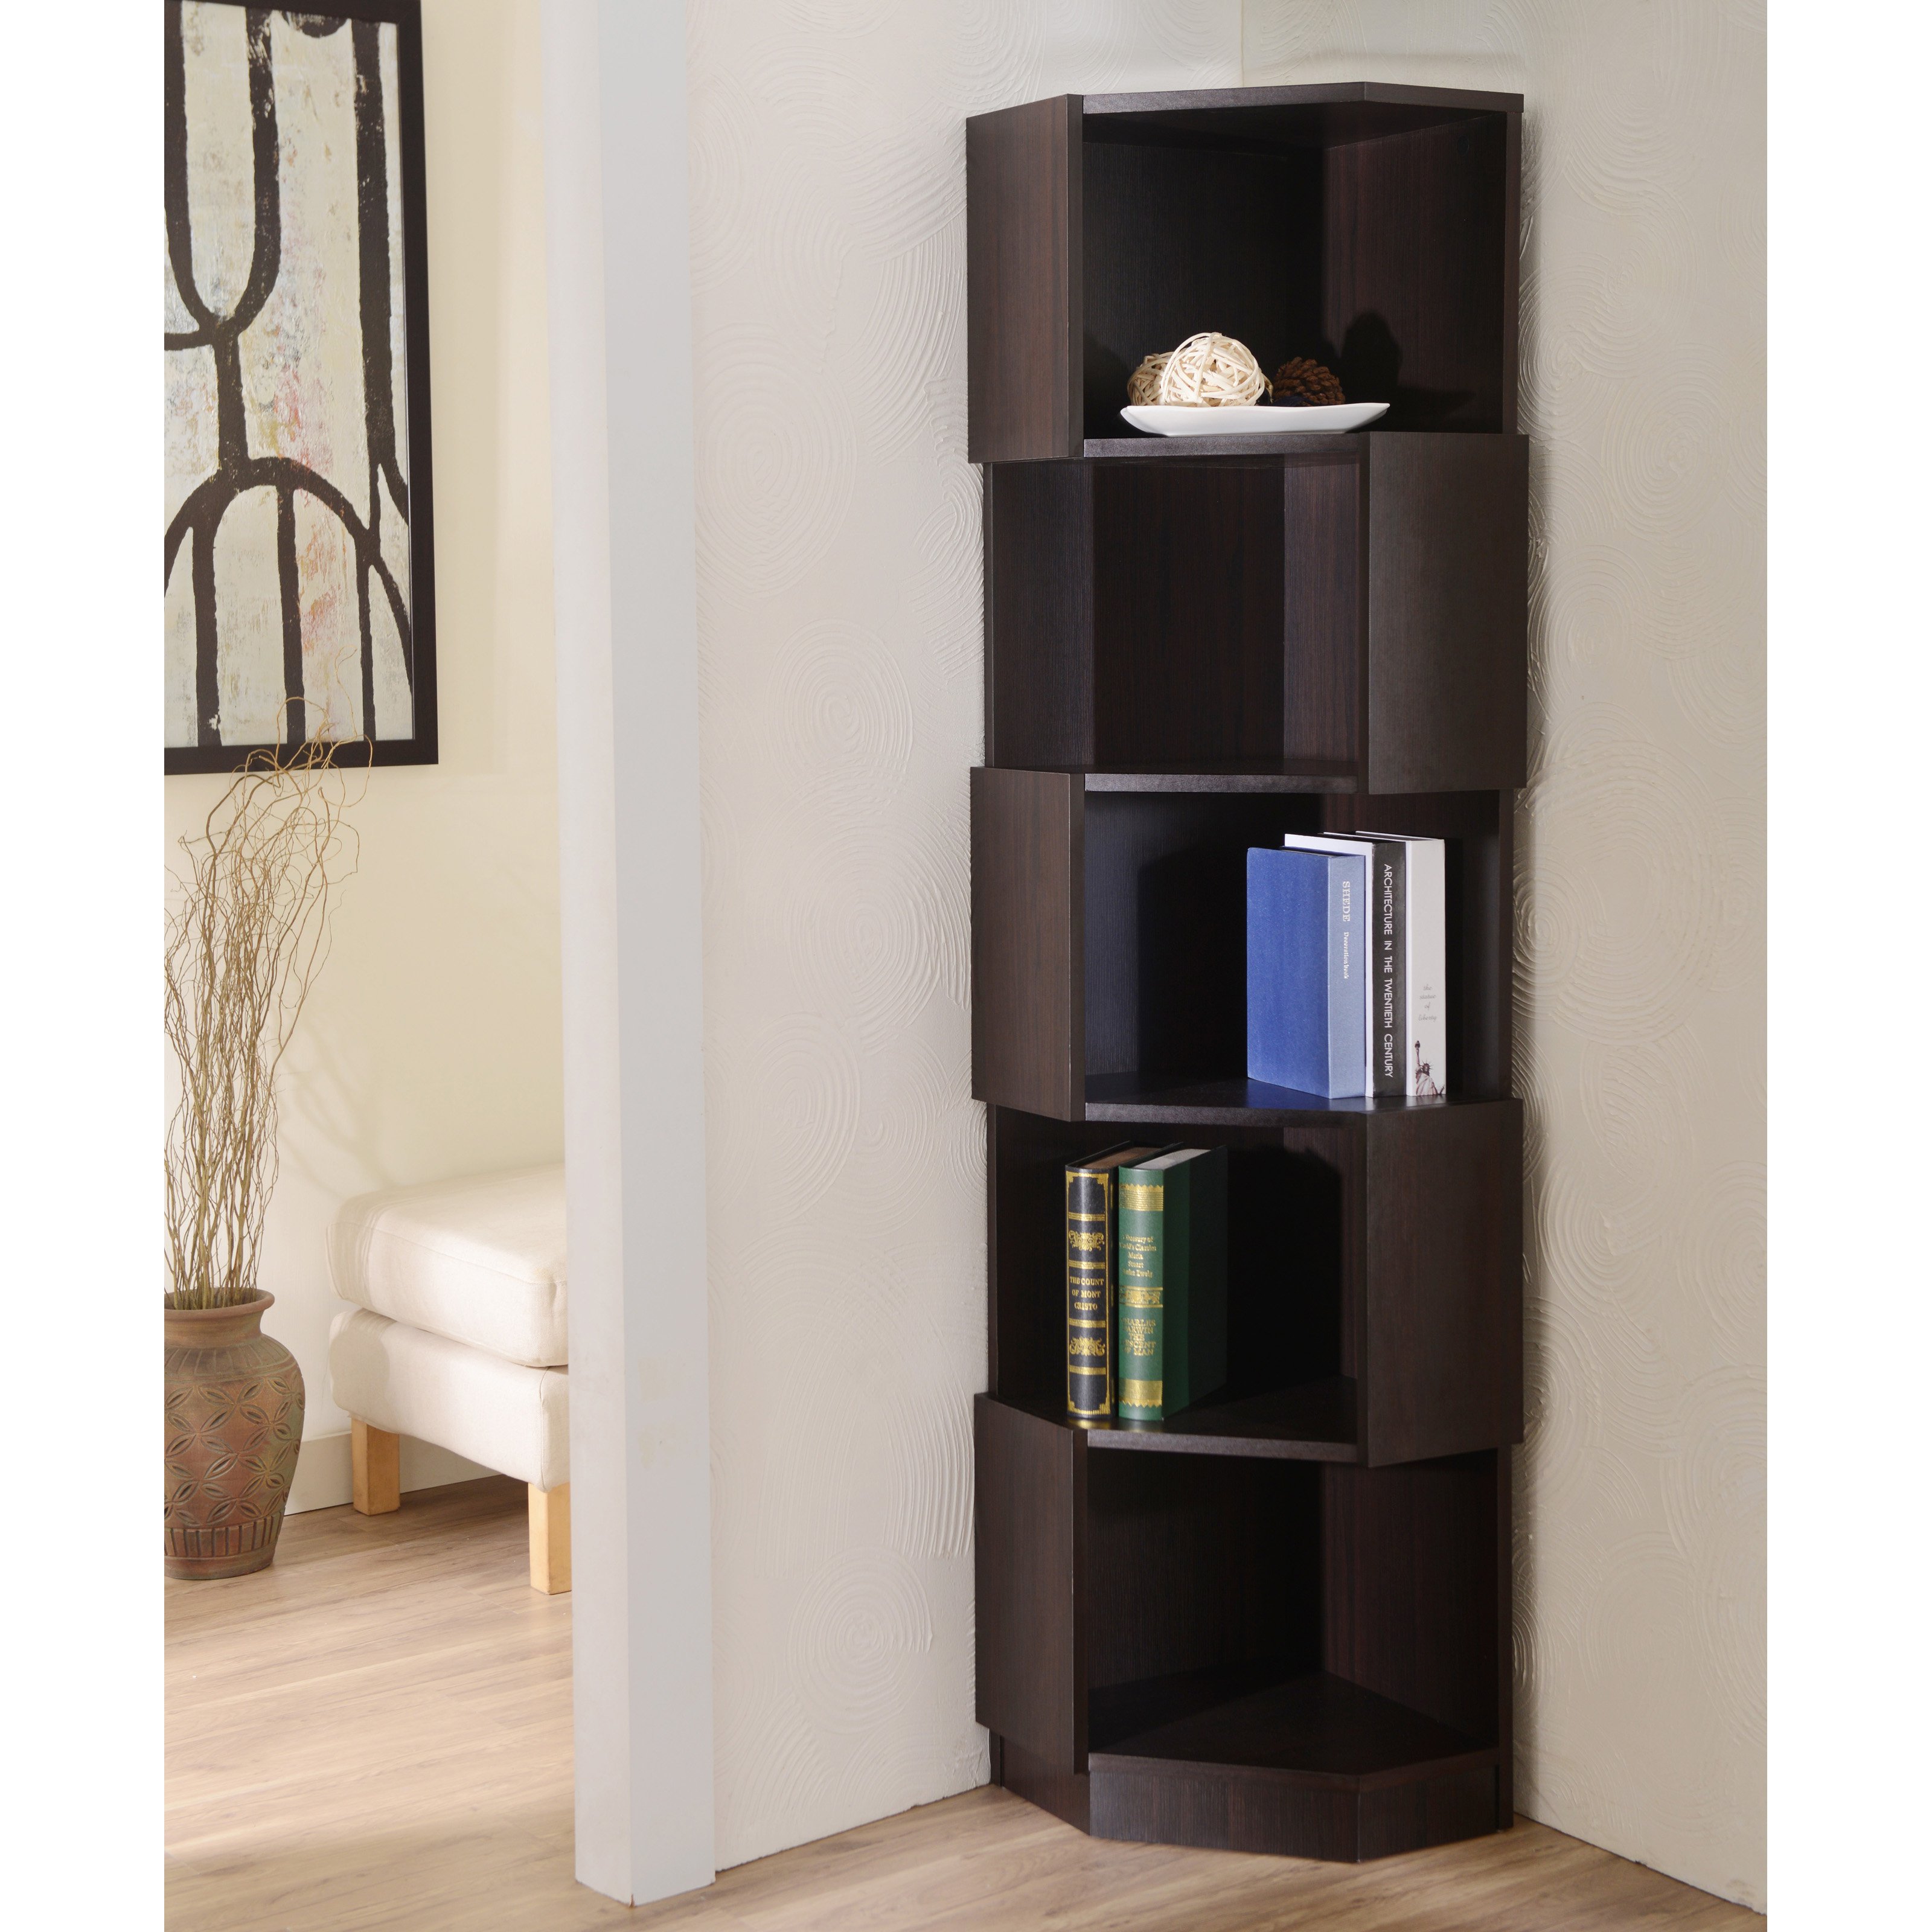 furniture of america laina geometric espresso 5-shelf corner bookshelf - HCFXZMM